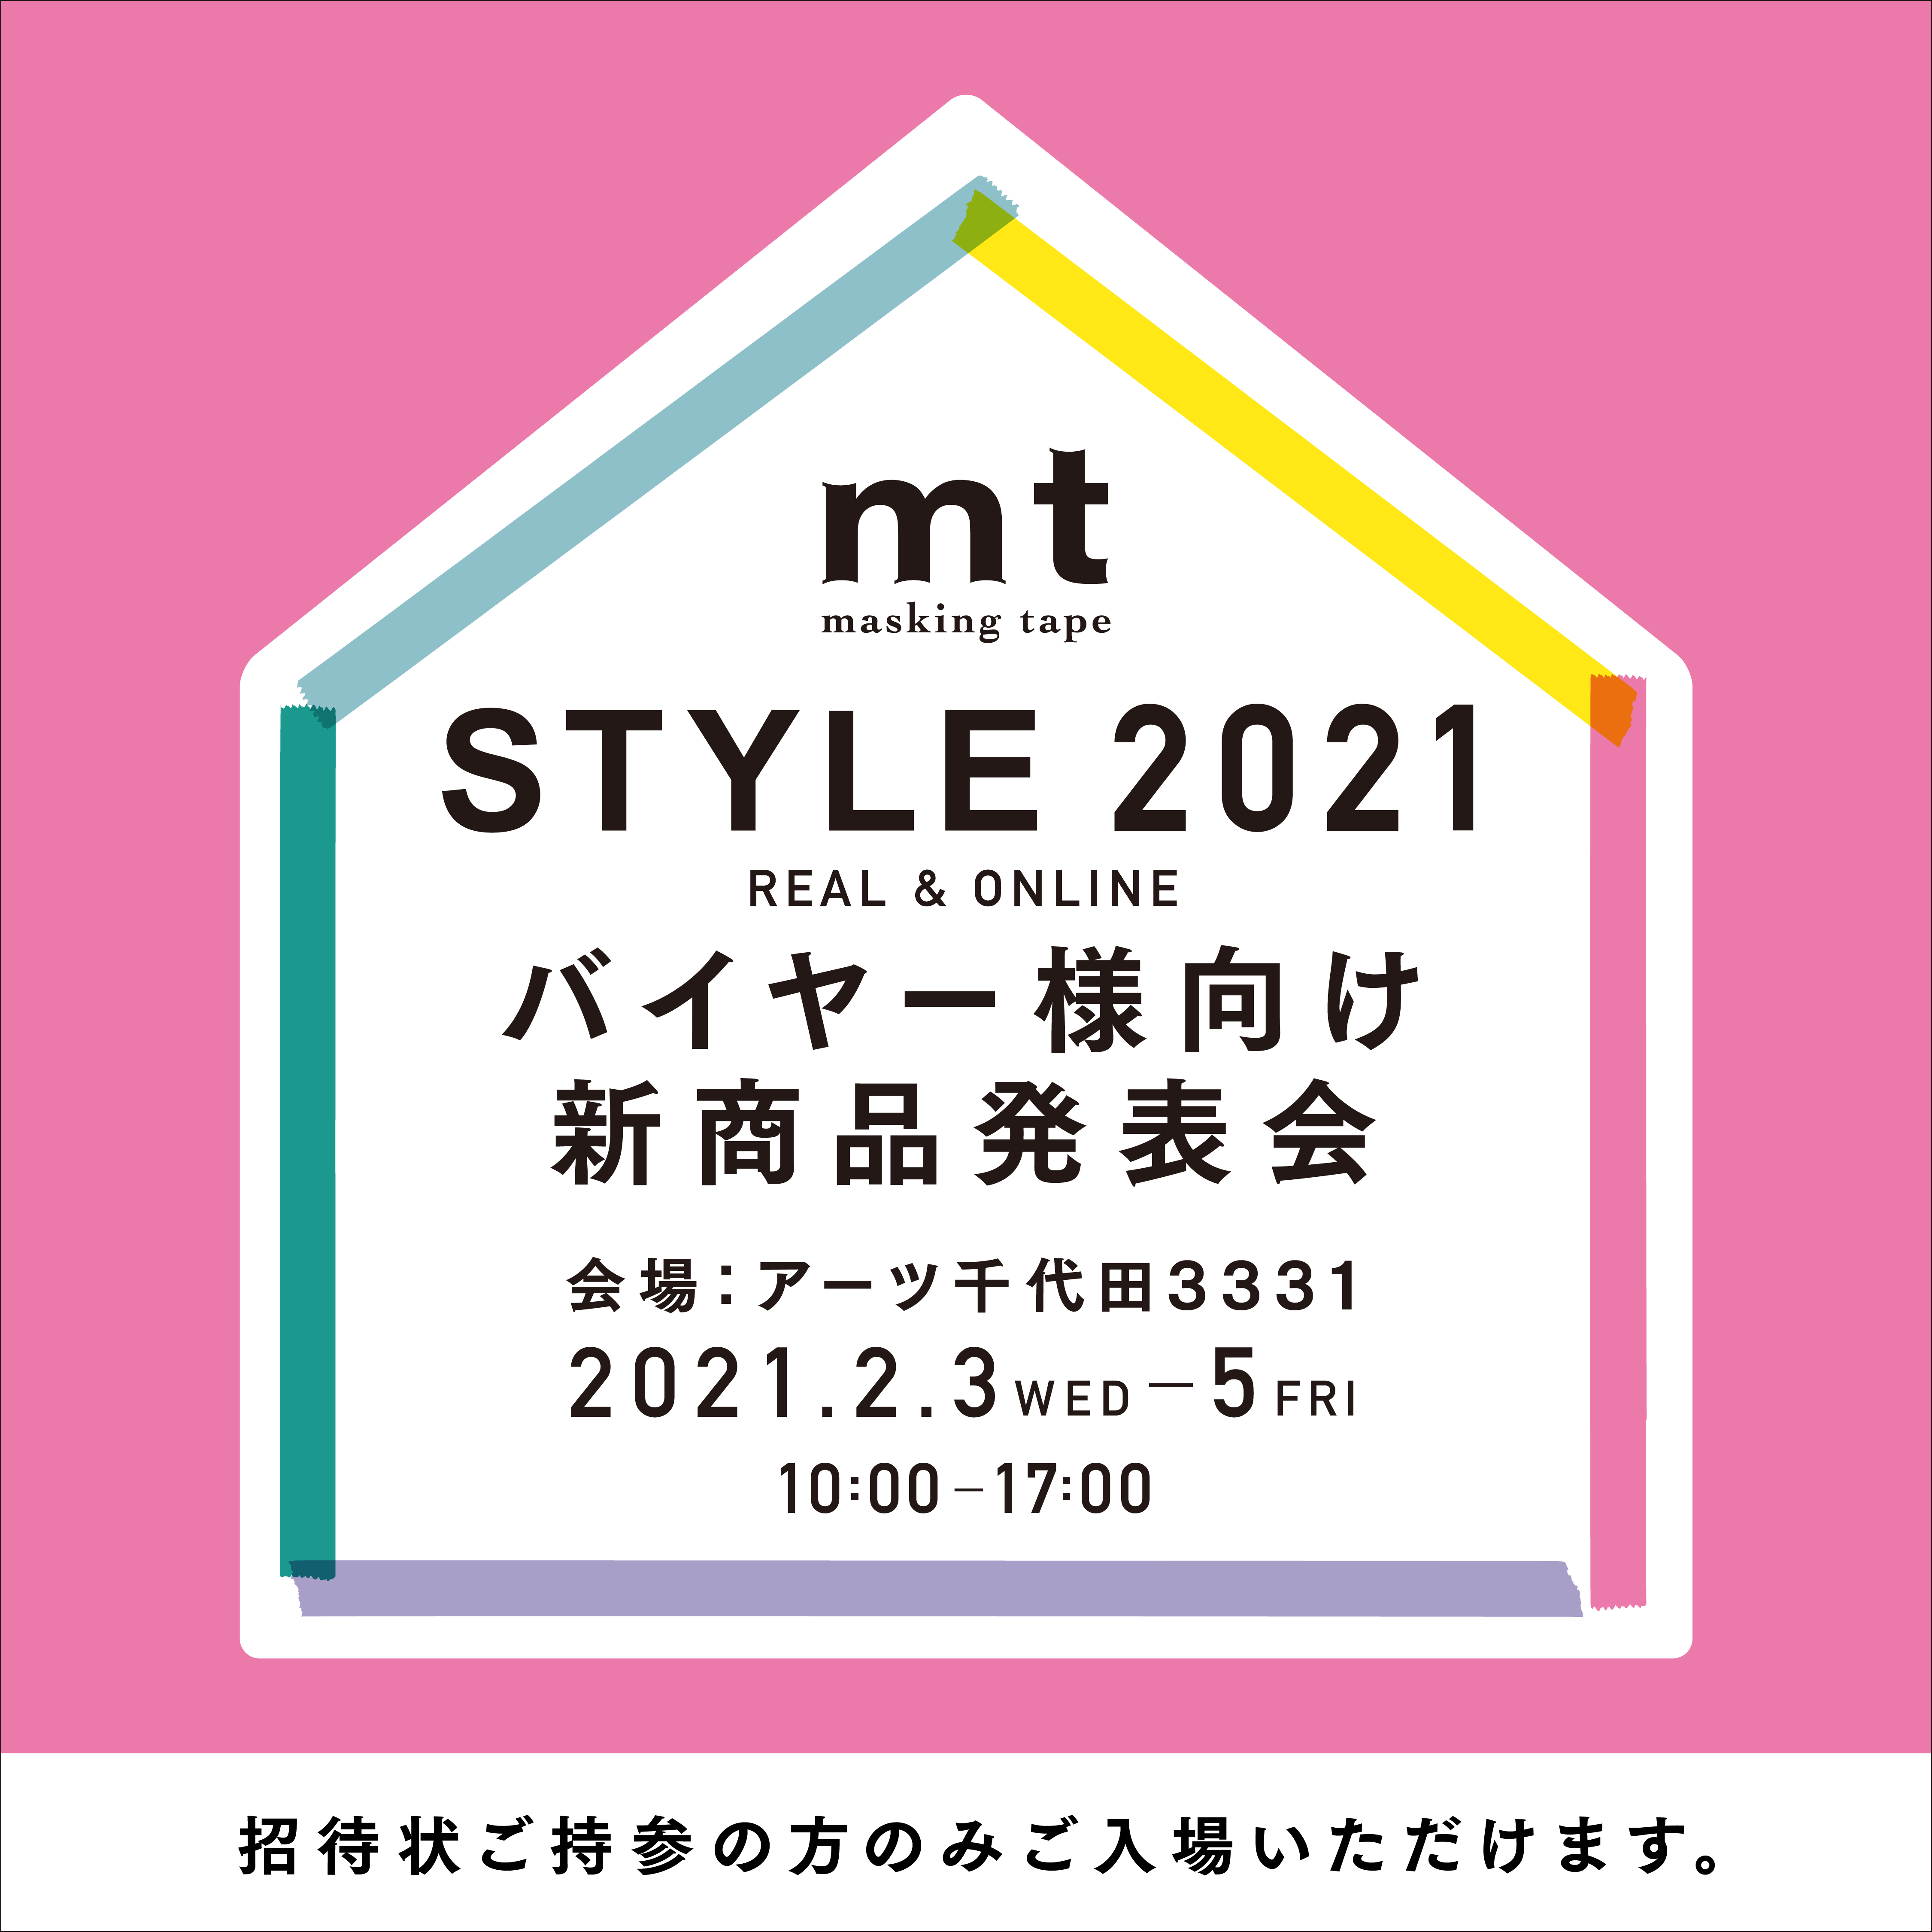 追伸】mt STYLE 2021 バイヤー様DM登録者様向け新商品発表会について